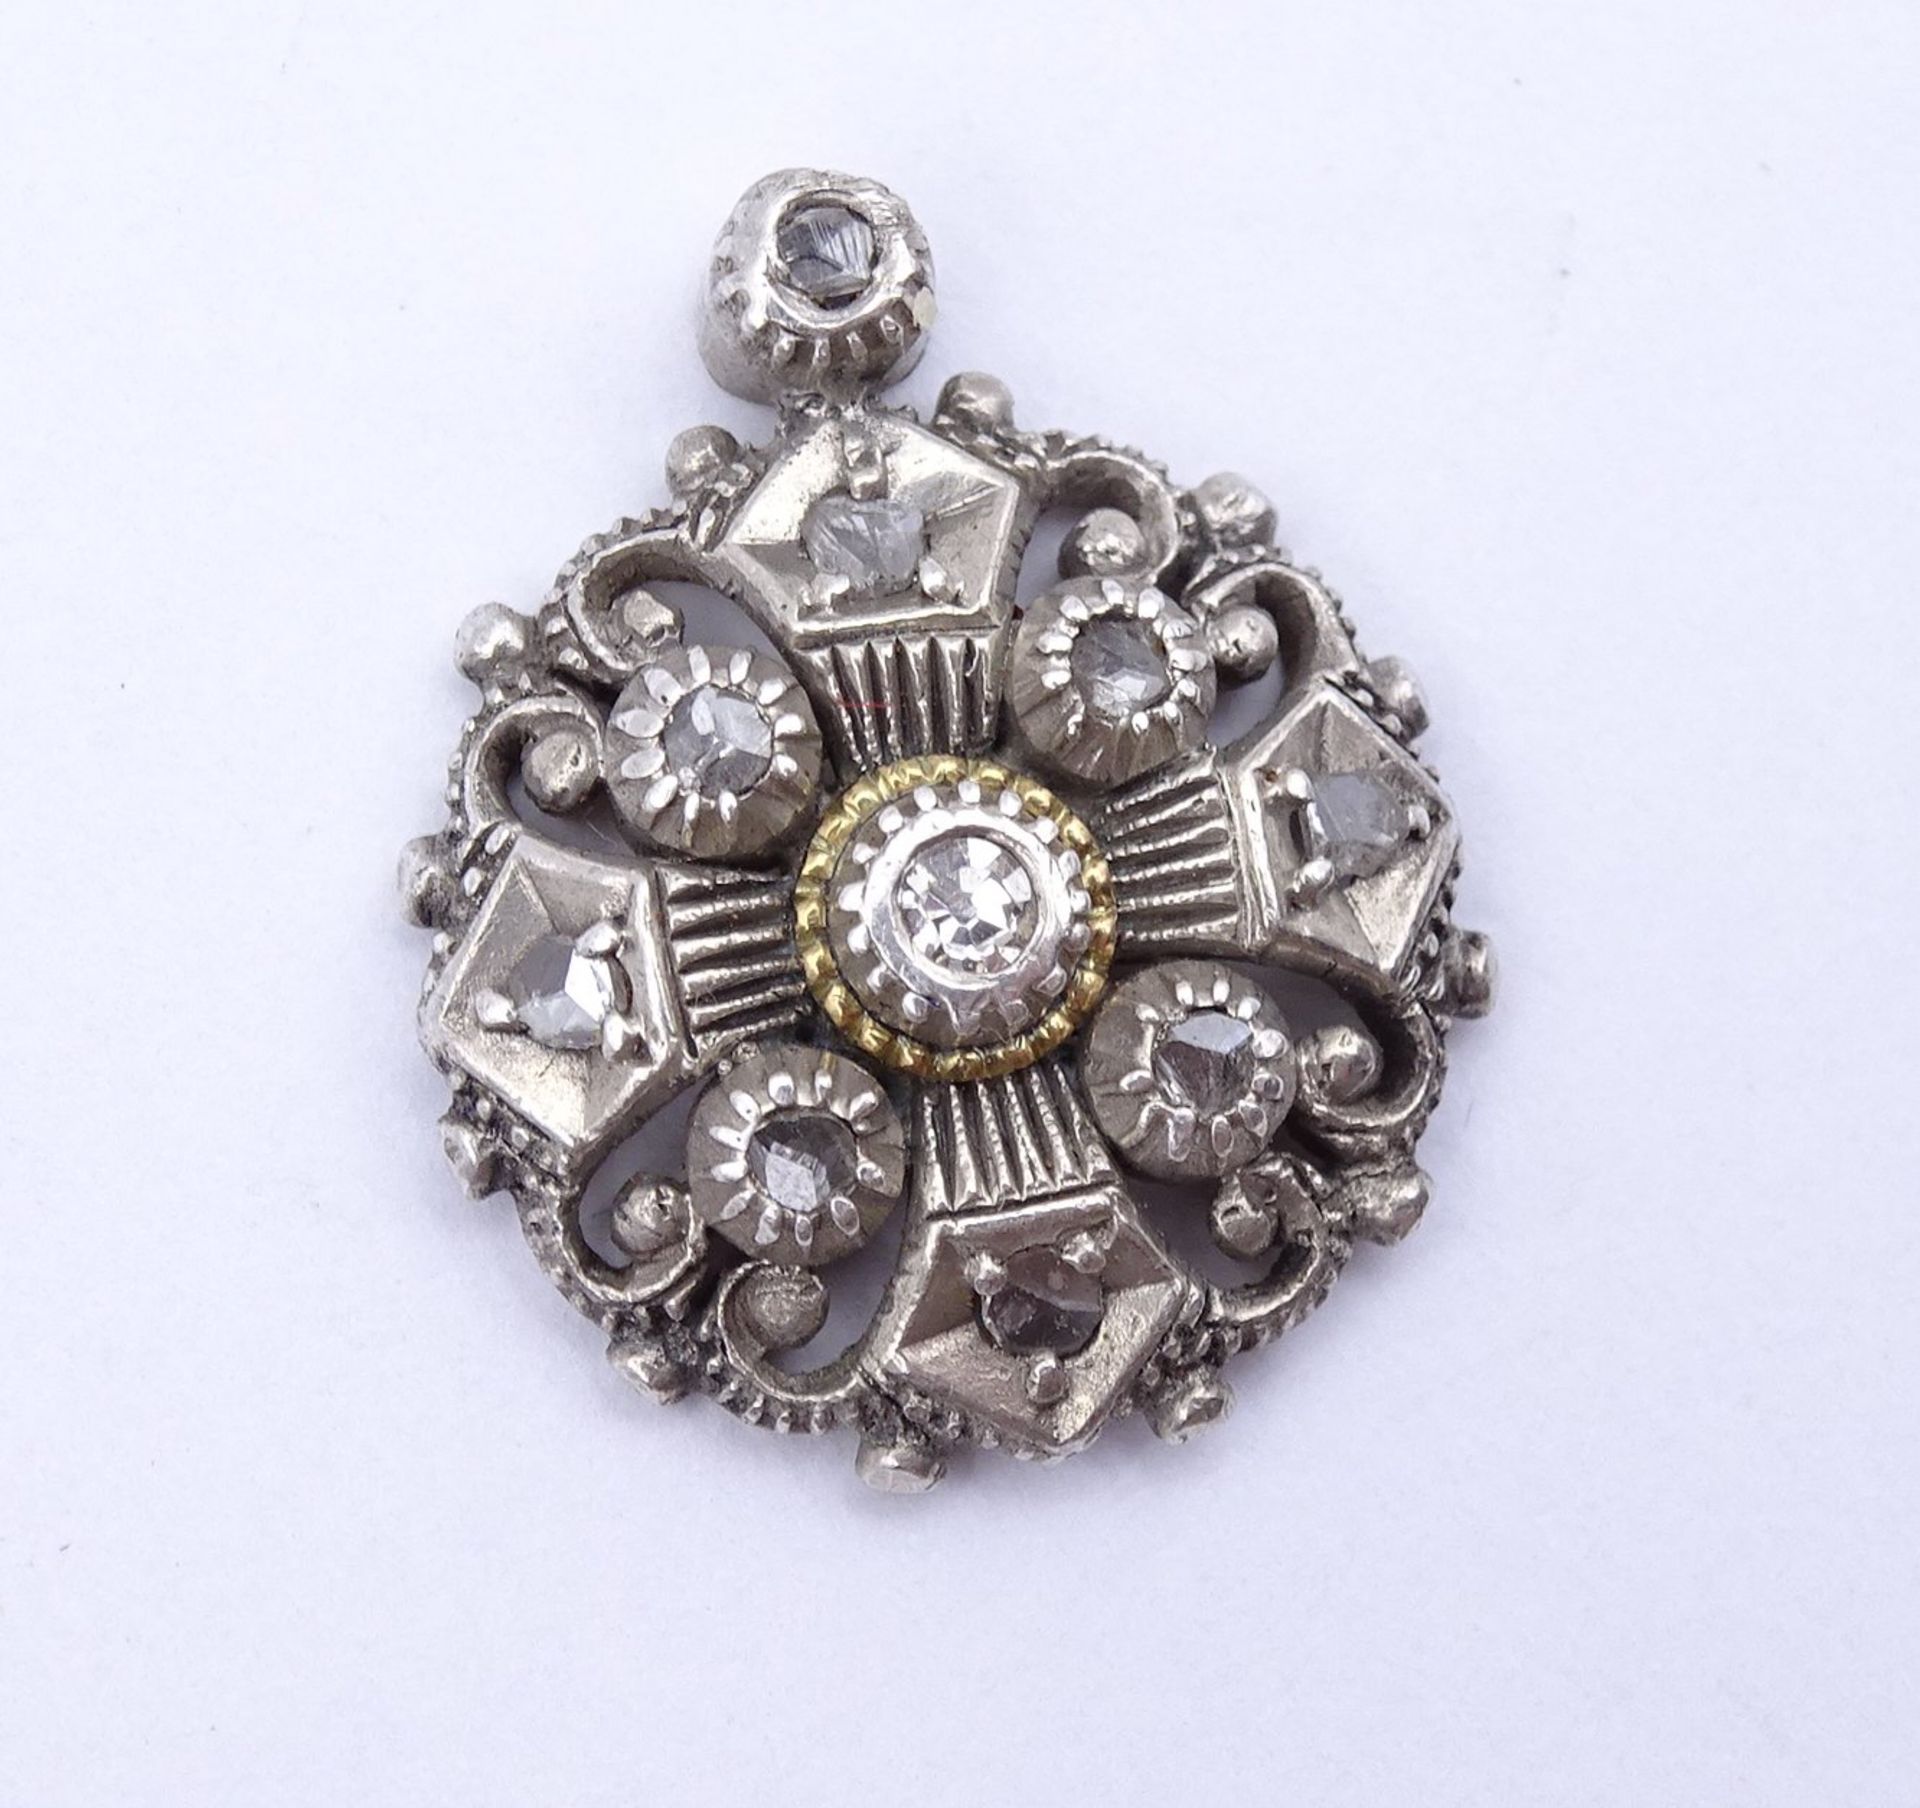 Ausgebrochenes Silber Schmuckstück mit Diamant und Diamantensplittern, 20x17mm, 3,1g. - Bild 3 aus 4